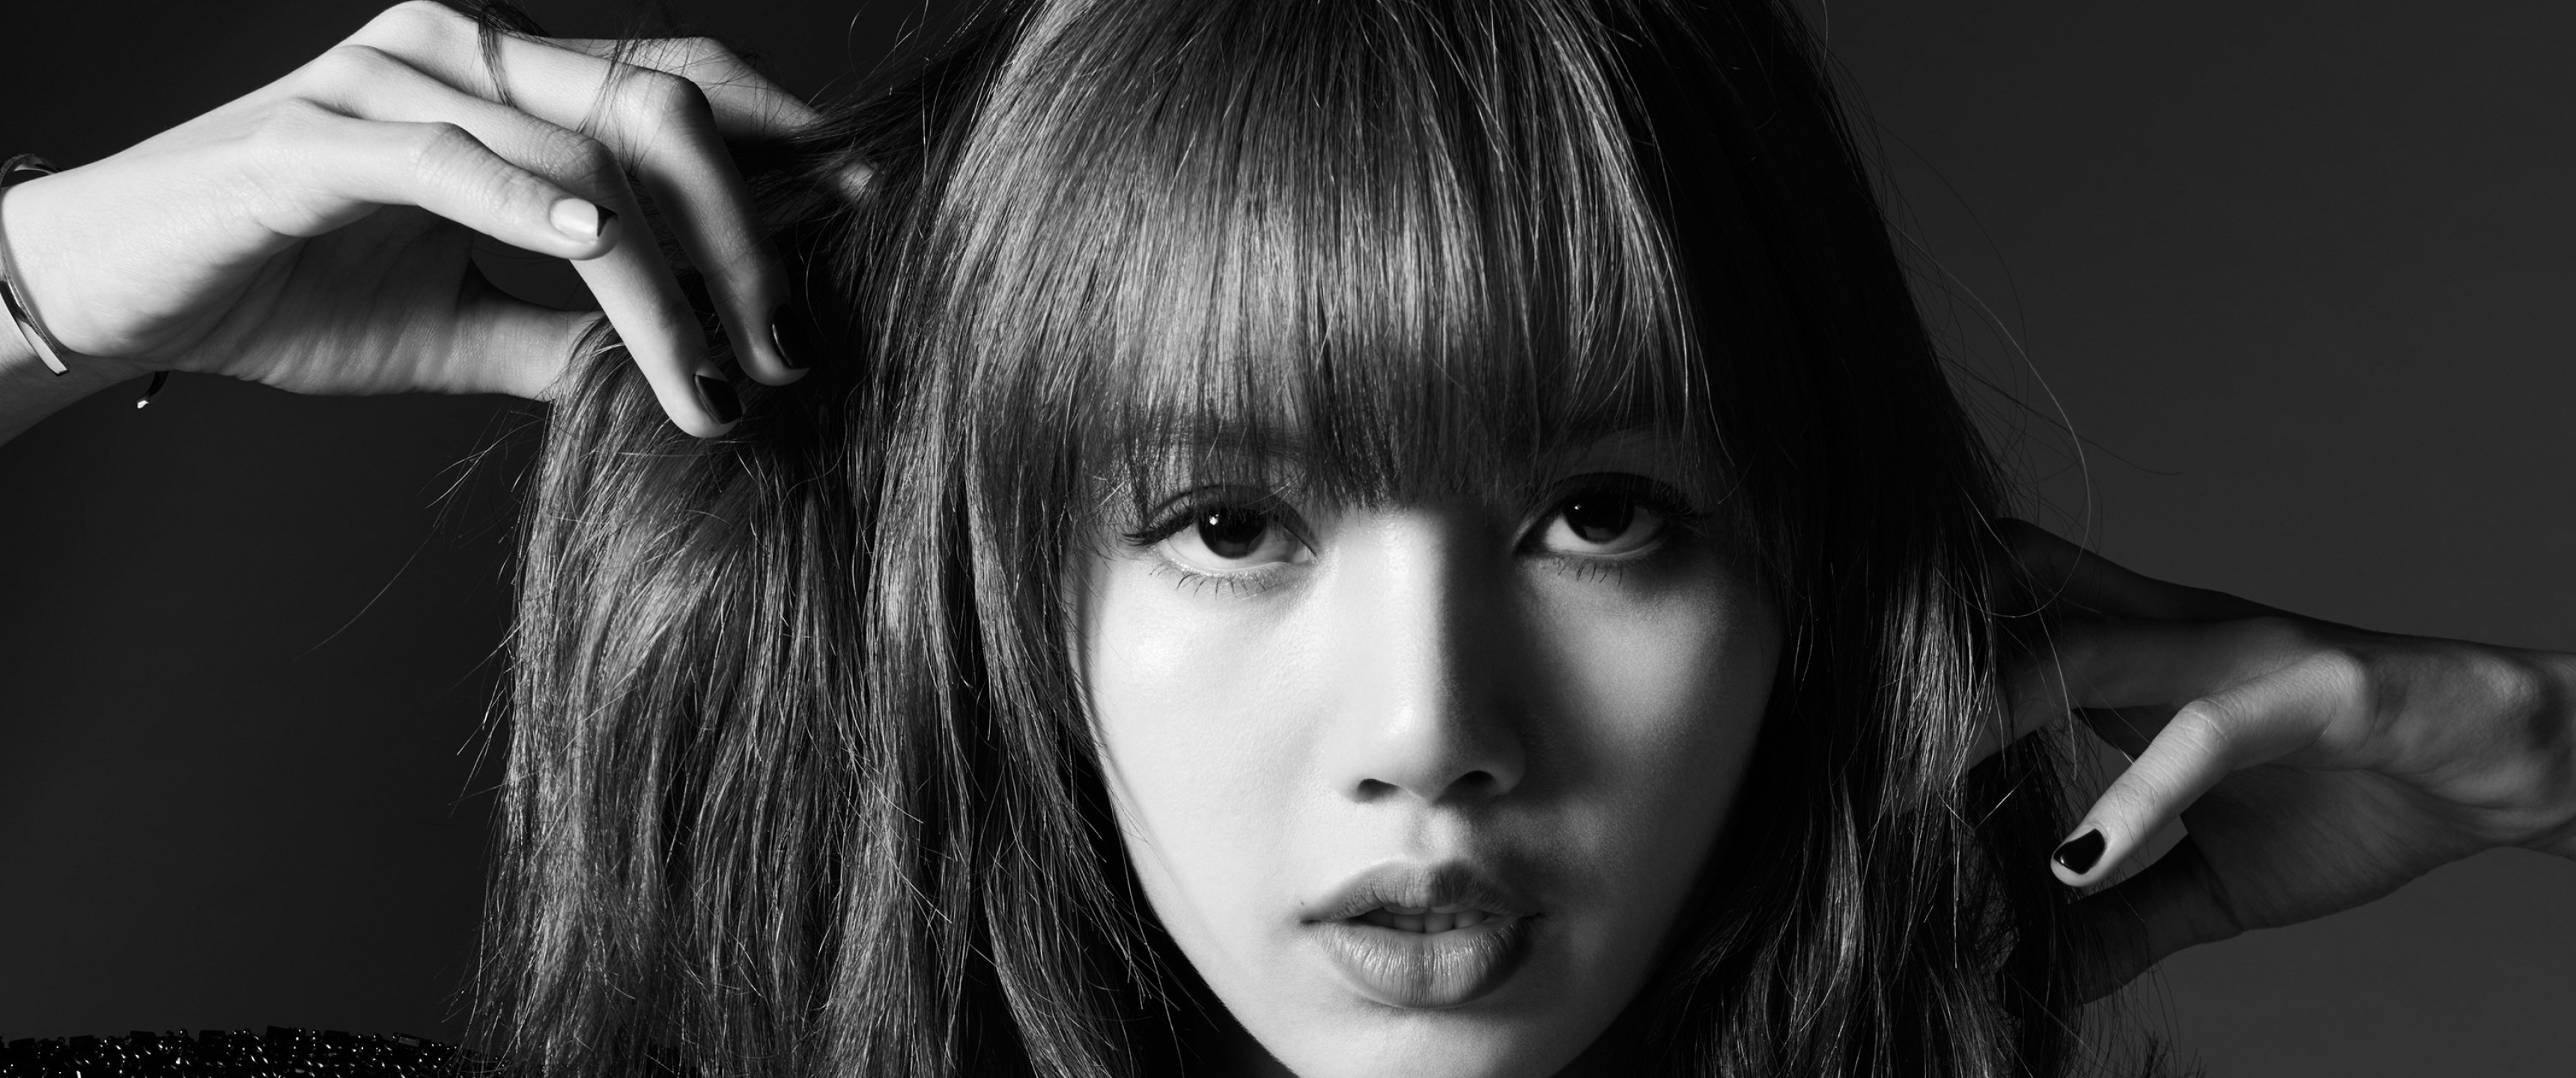 Lisa Wallpaper 4K, Blackpink, Thai Singer, Asian Girl, K Pop Singer, Black Dark